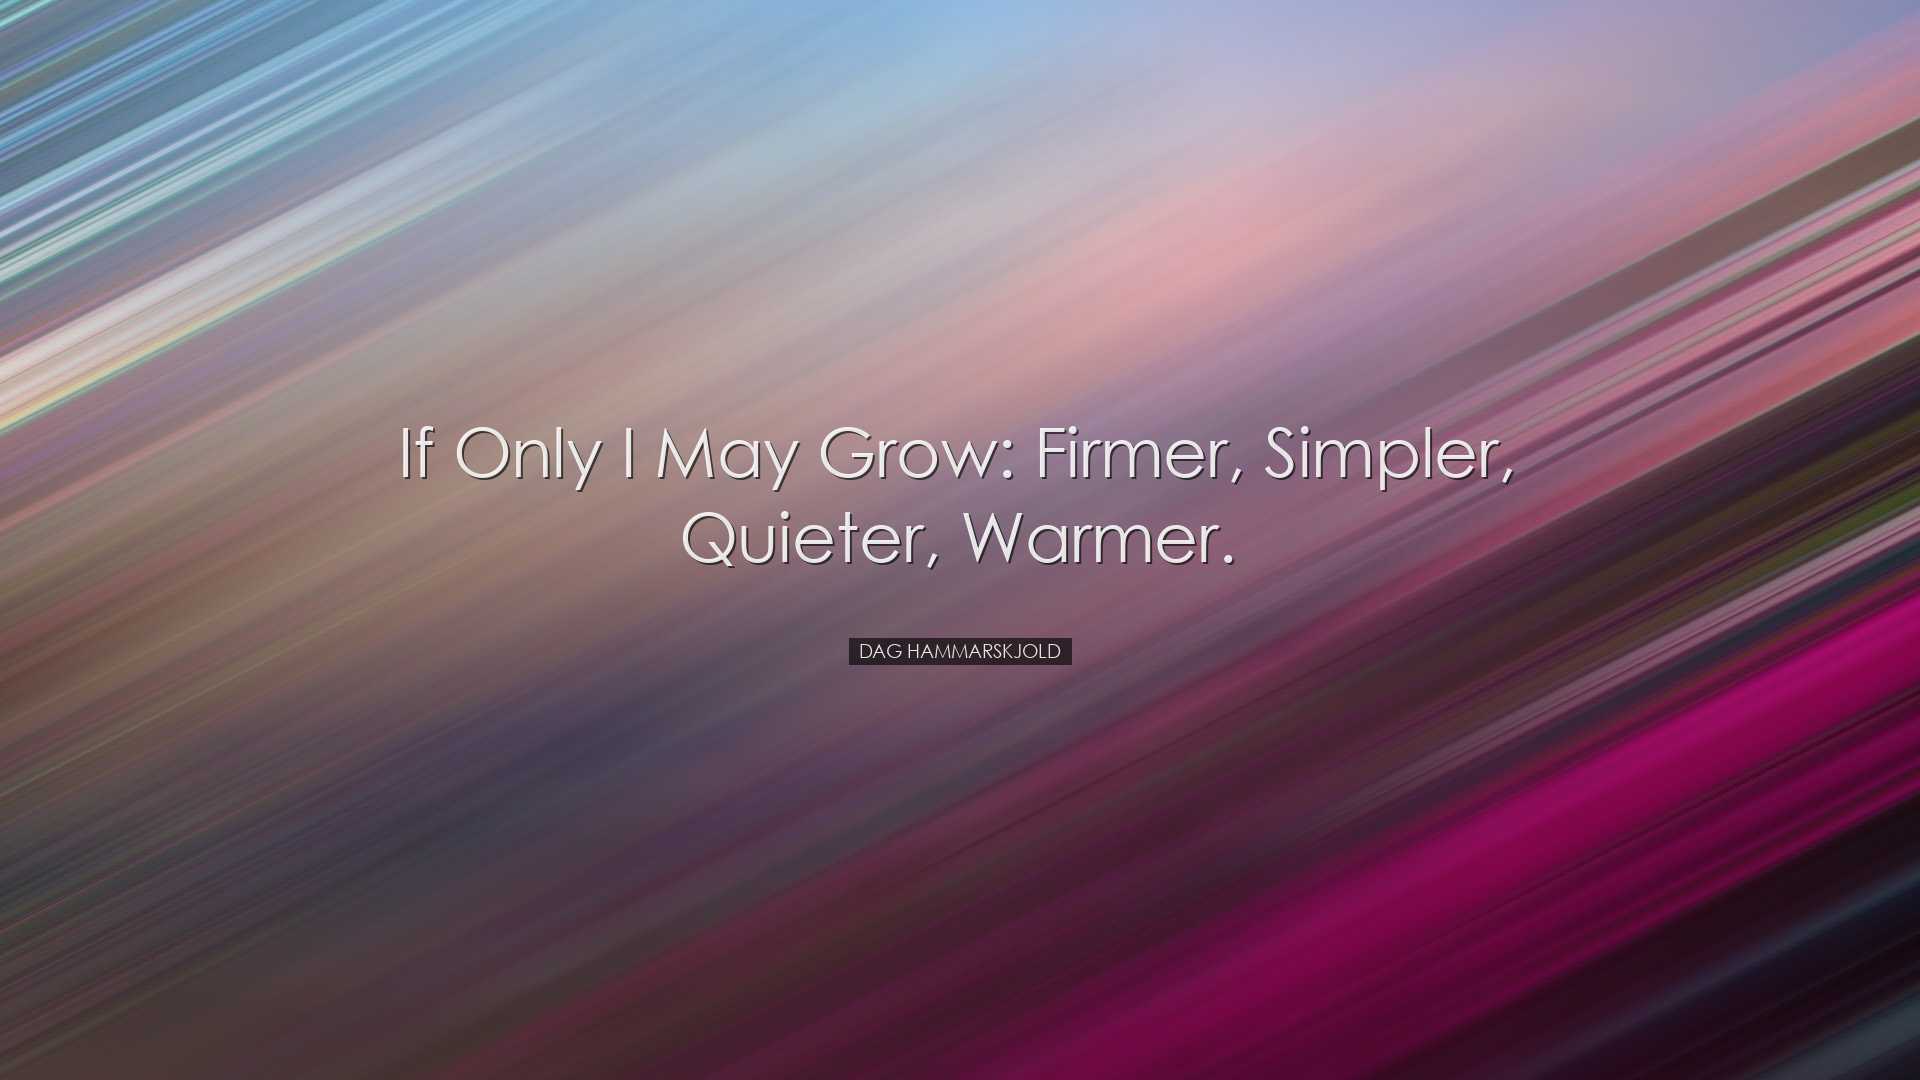 If only I may grow: firmer, simpler, quieter, warmer. - Dag Hammar